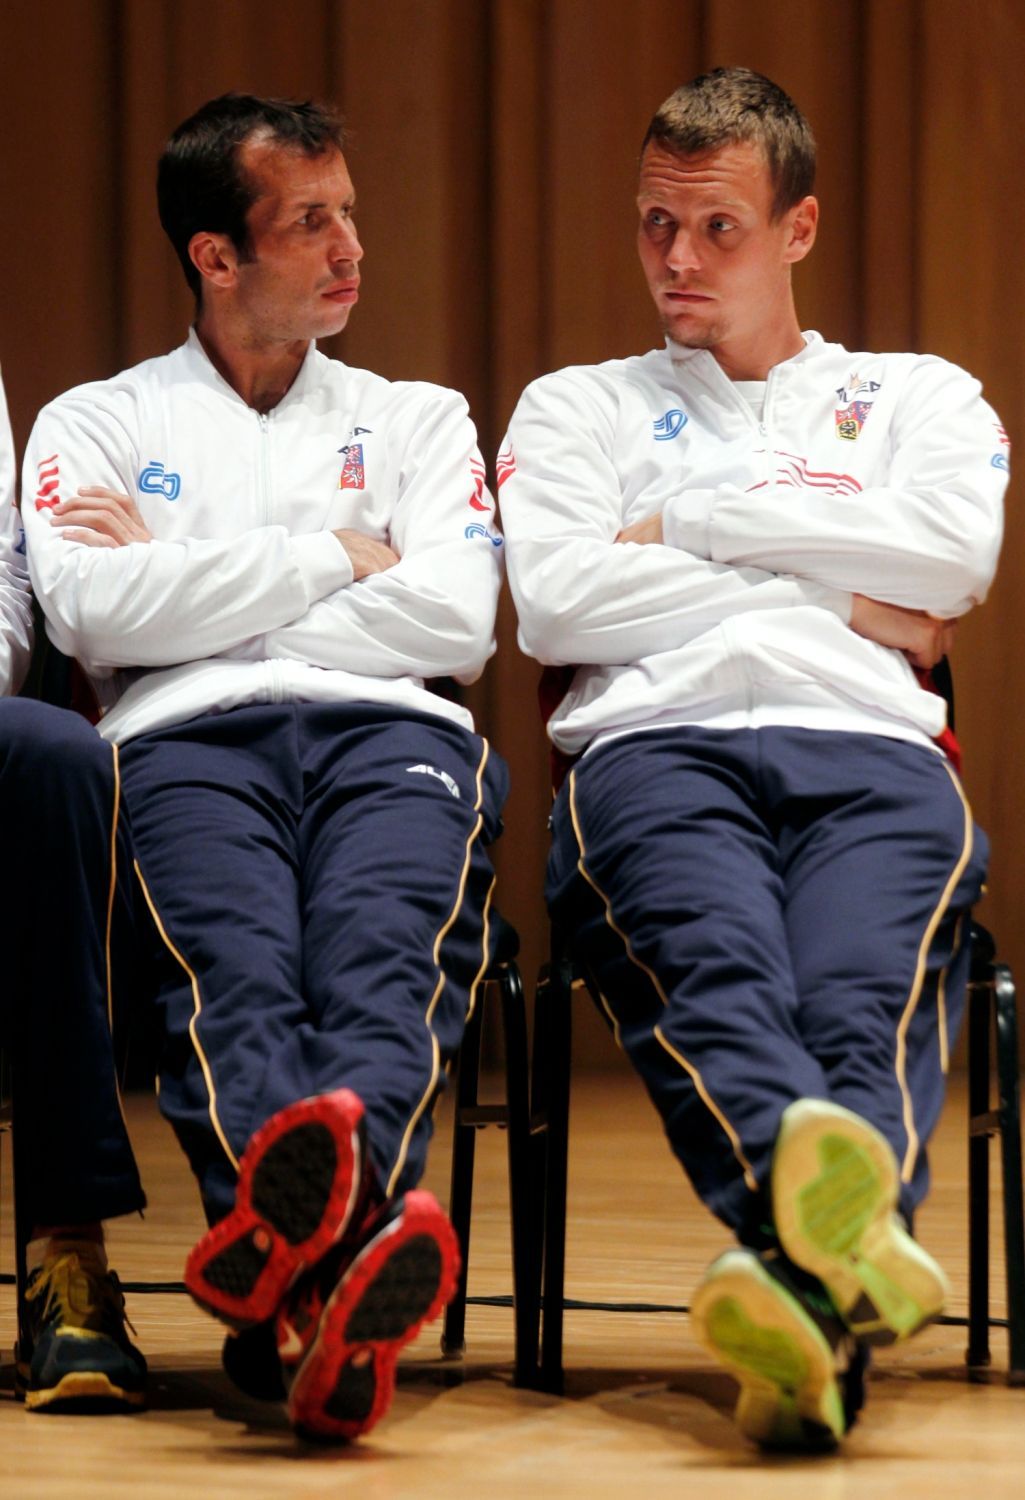 Tenisté Radek Štěpánek a Tomáš Berdych během oficiálního losování semifinálových utkání Davis Cupu 2012.